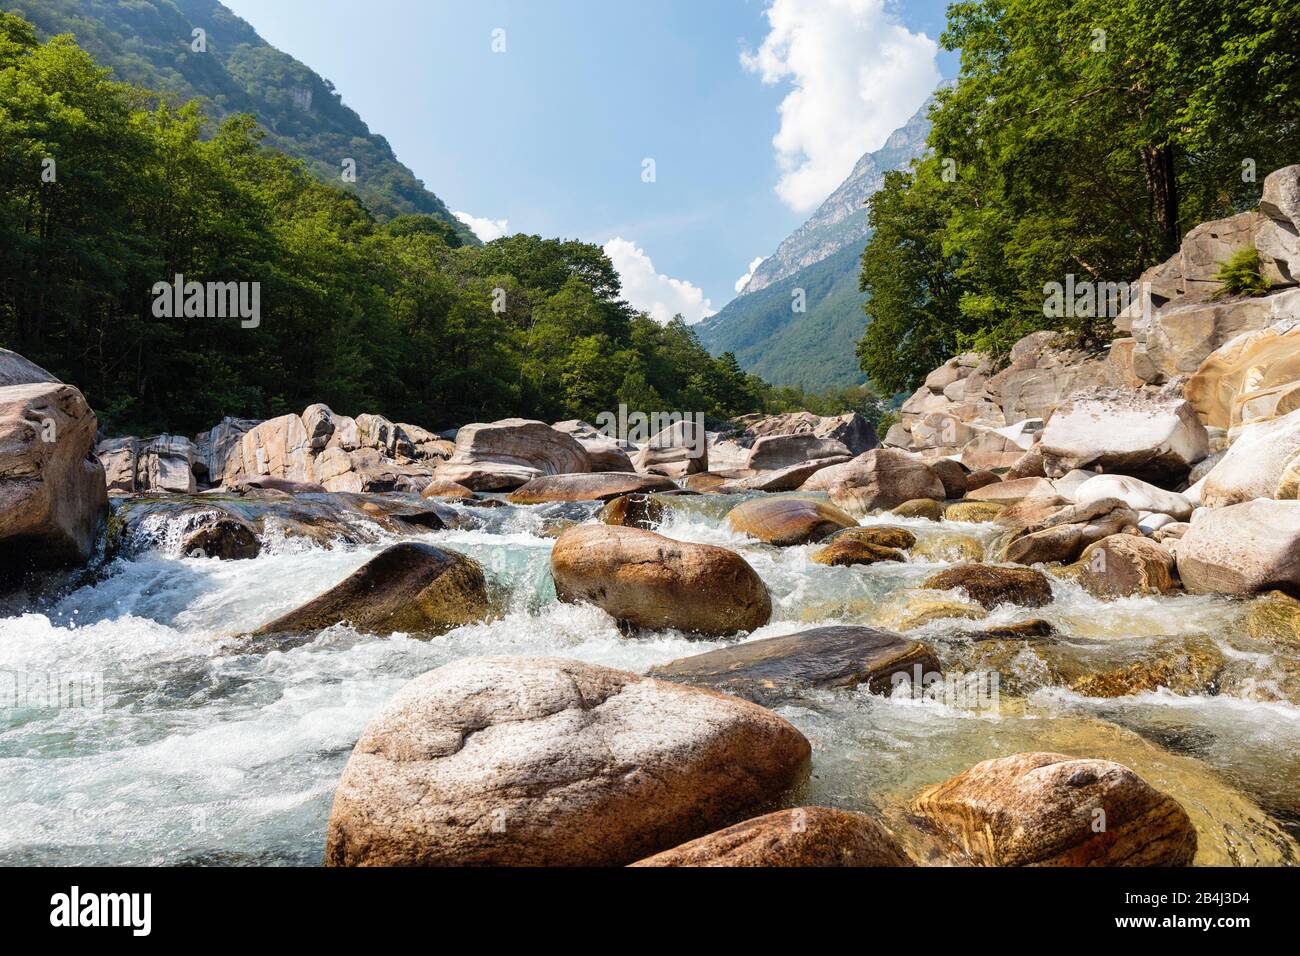 Europa, Schweiz, Tessin, Lavertezzo. Der Verzasca-Fluss fließt durch sein felsiges Bett im nach ihm benannten Verzascatal (Valle Verzasca). Stock Photo